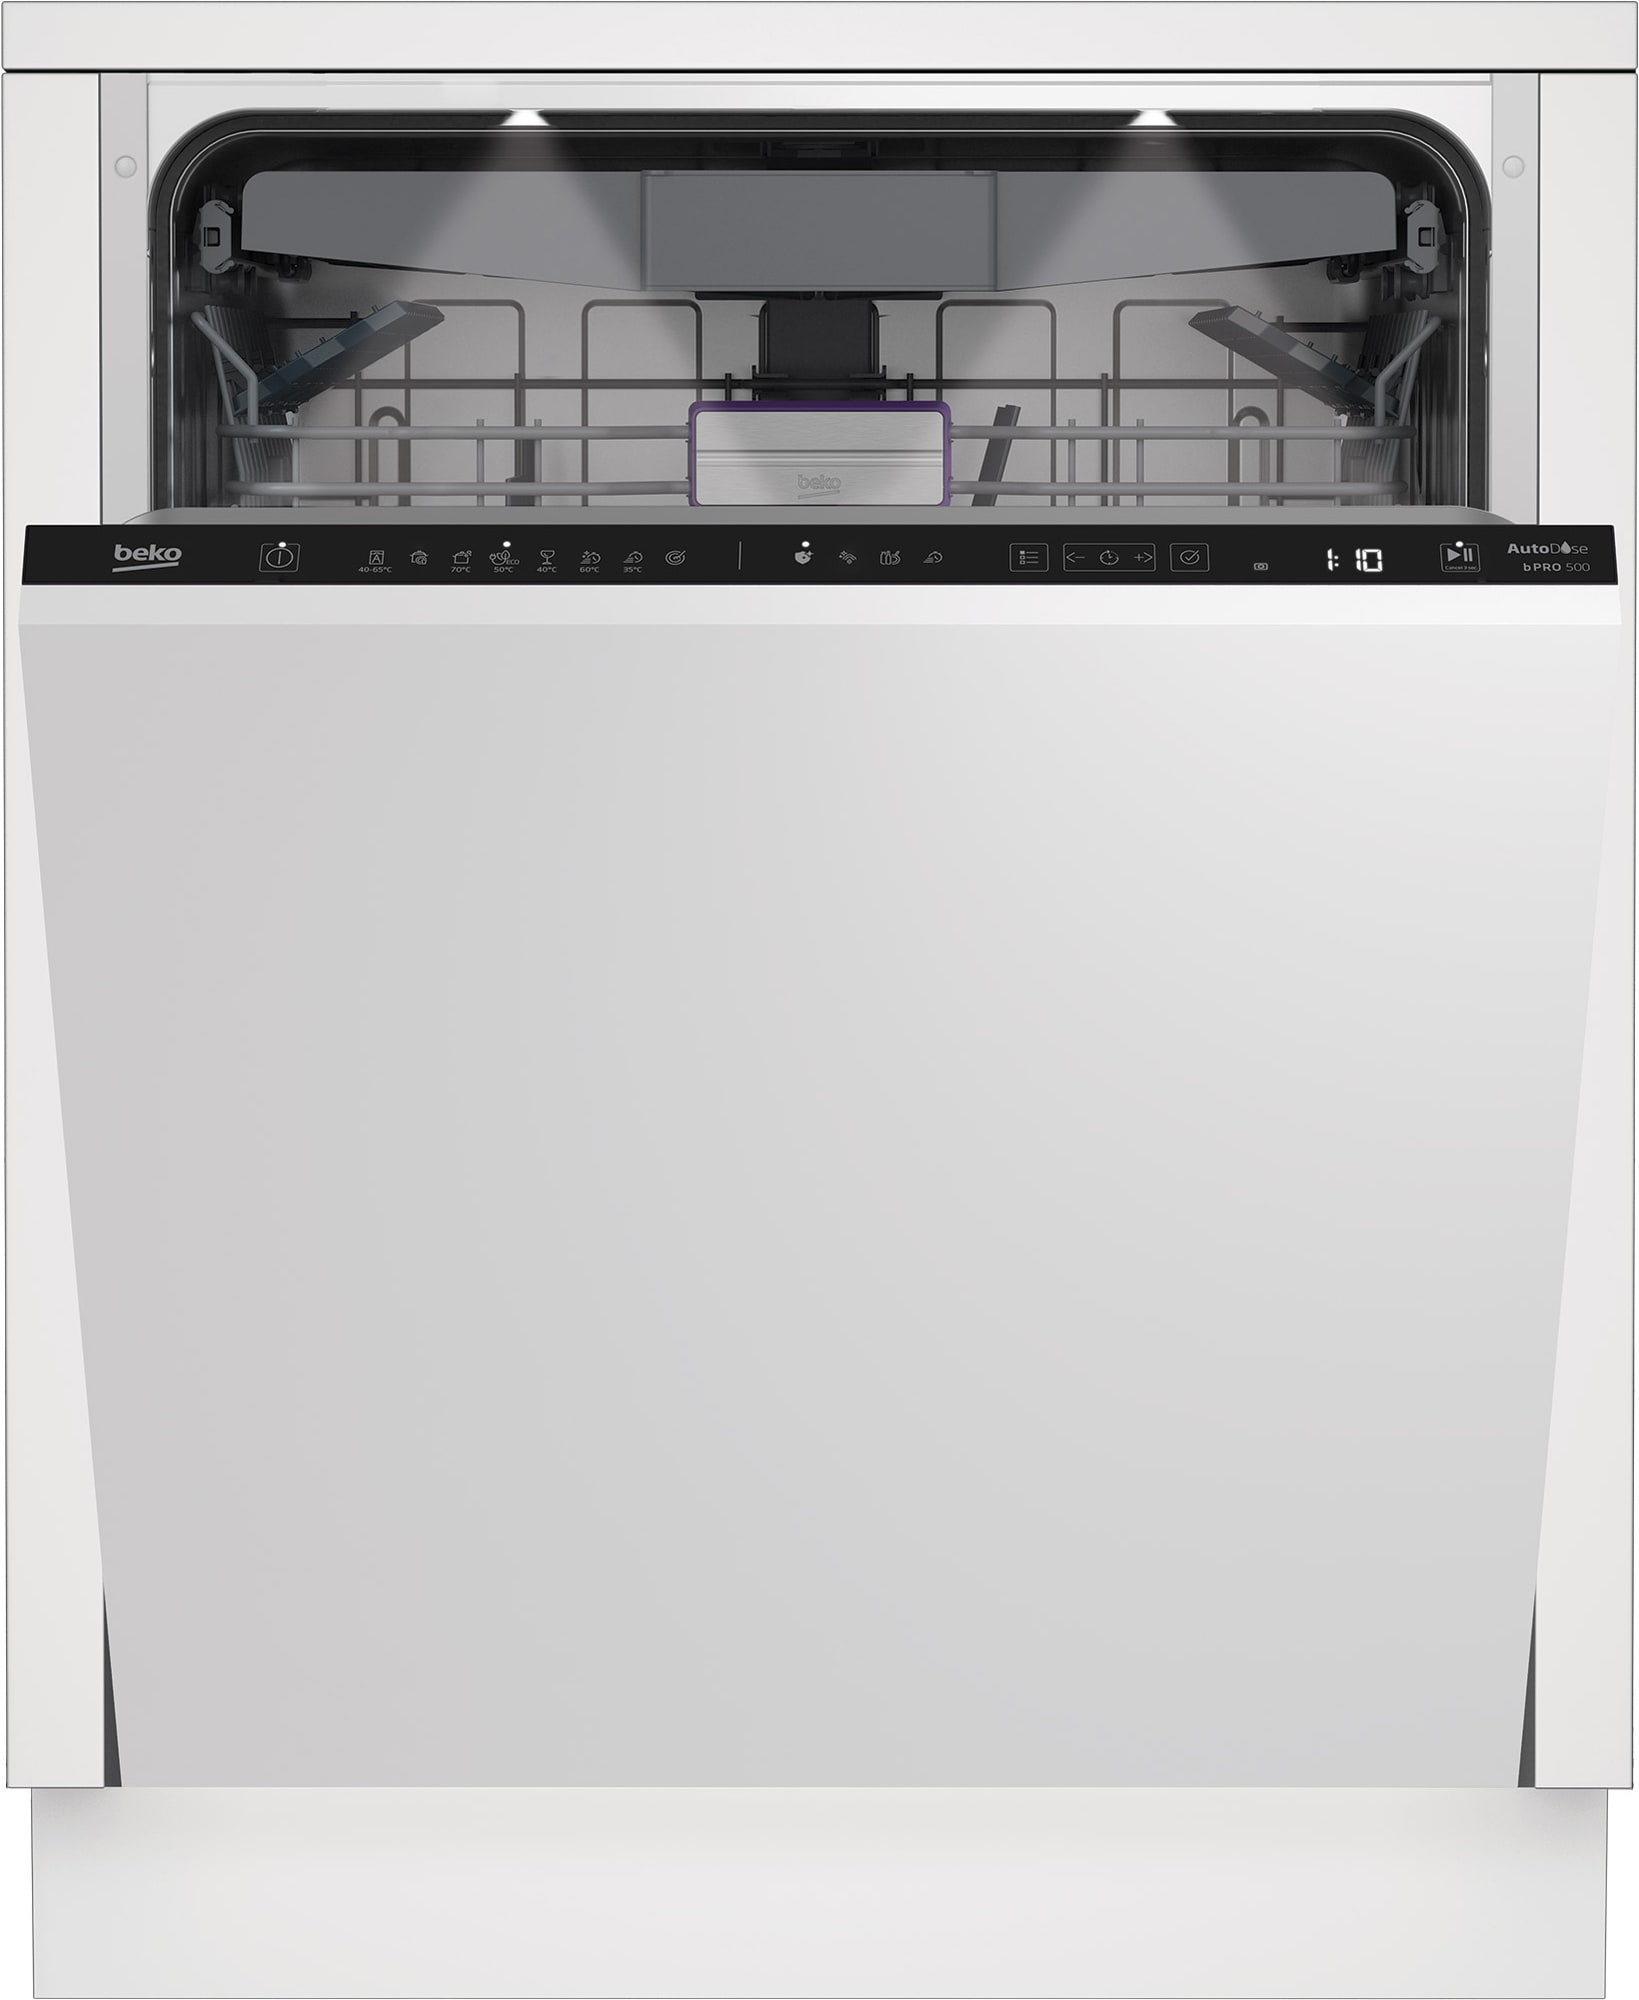 Beko oppvaskmaskin BDIN386E4AD innebygd - Elkjøp